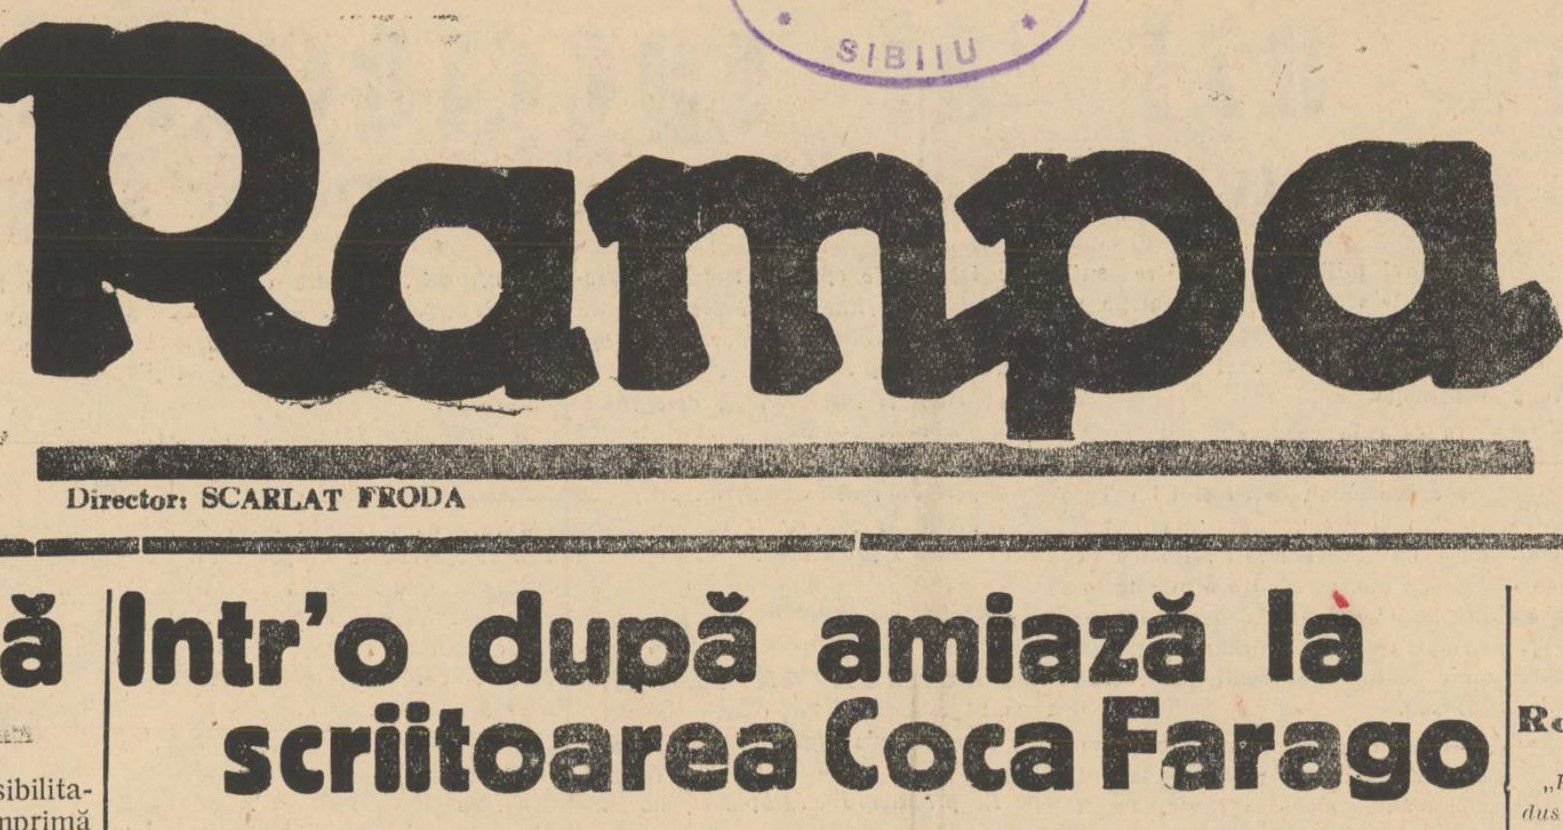 Coca Farago